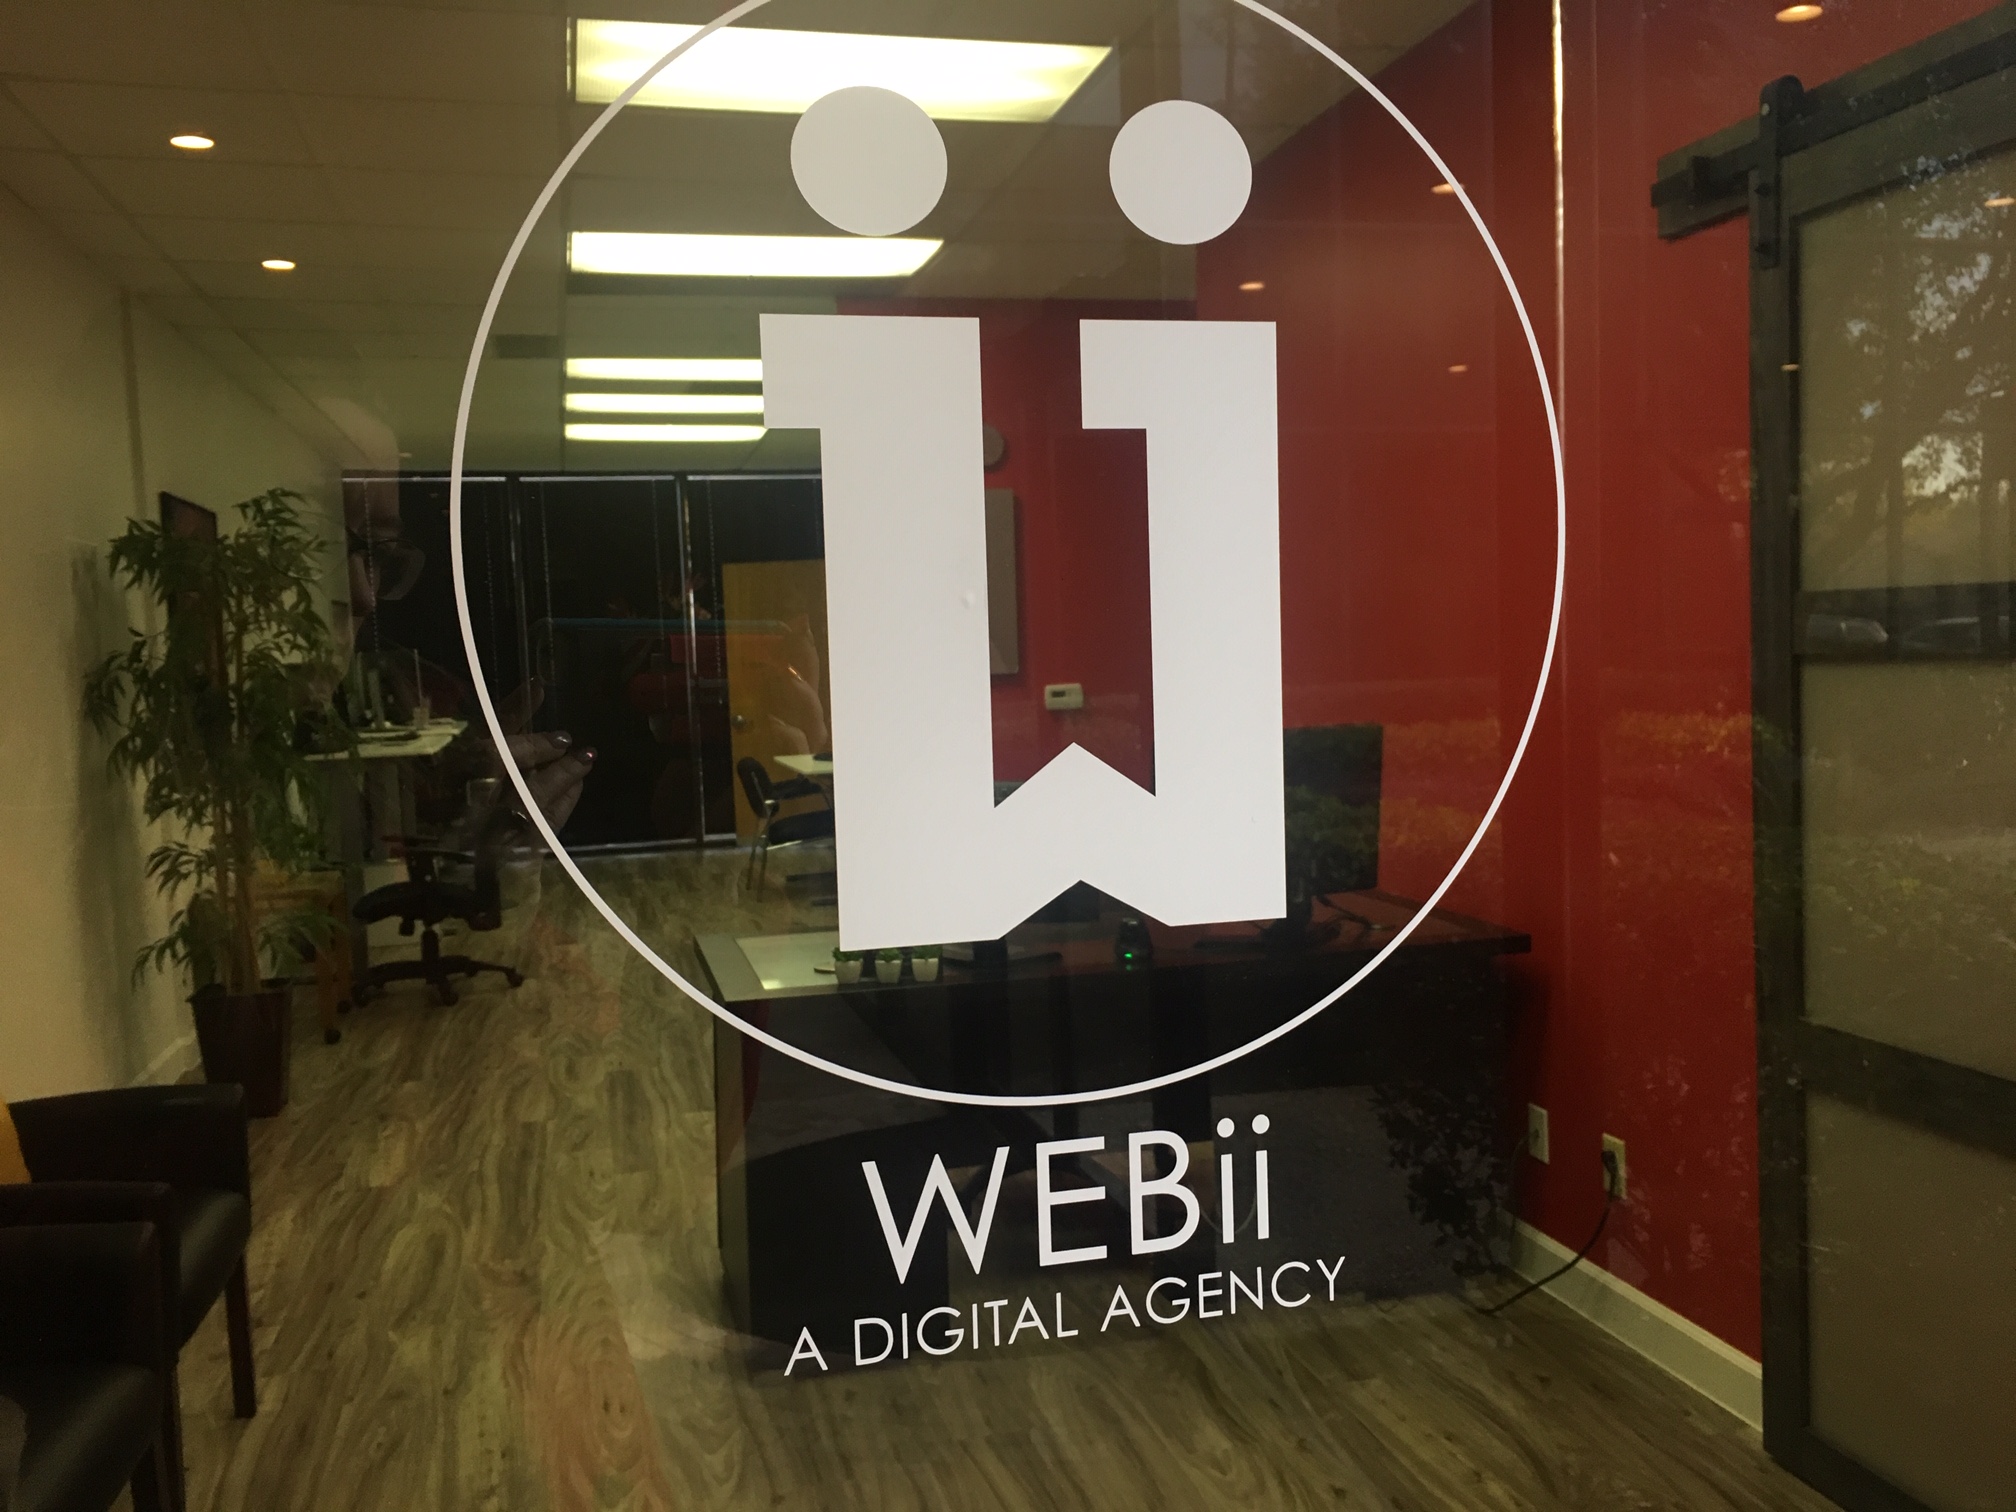 WEBii entry office in Austin